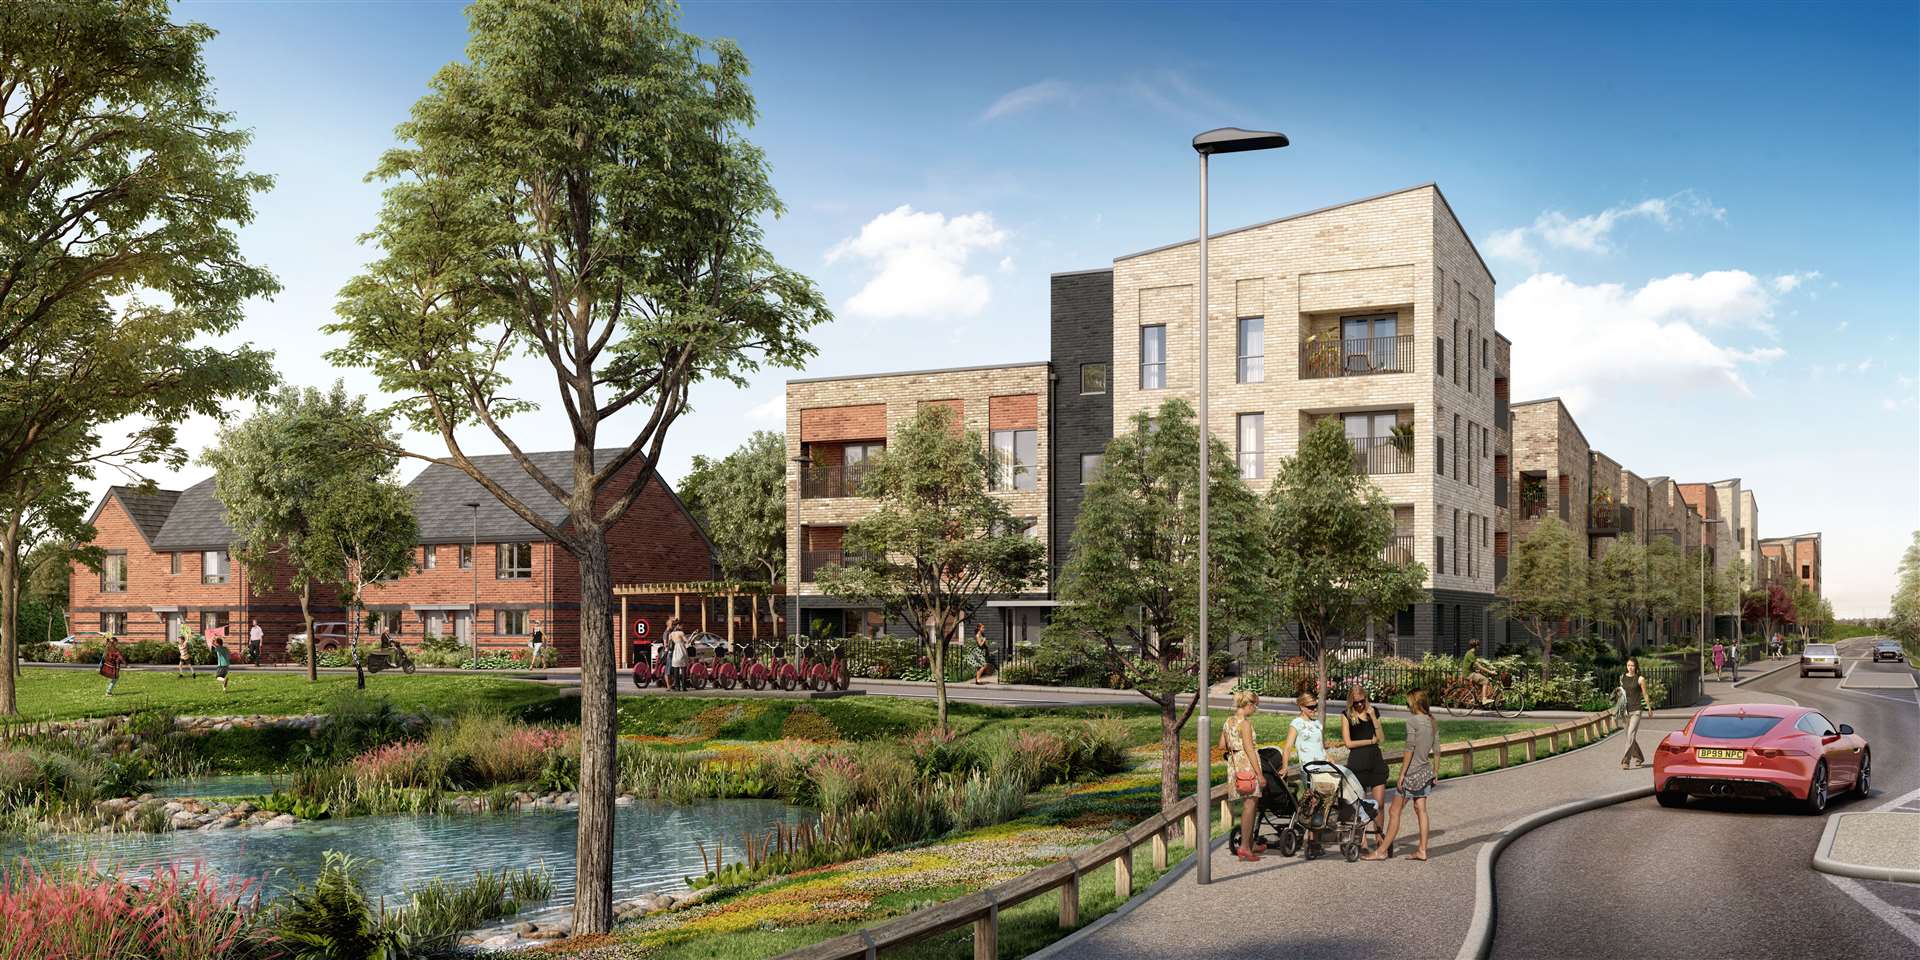 New homes have been announced for Ebbsfleet Garden City.